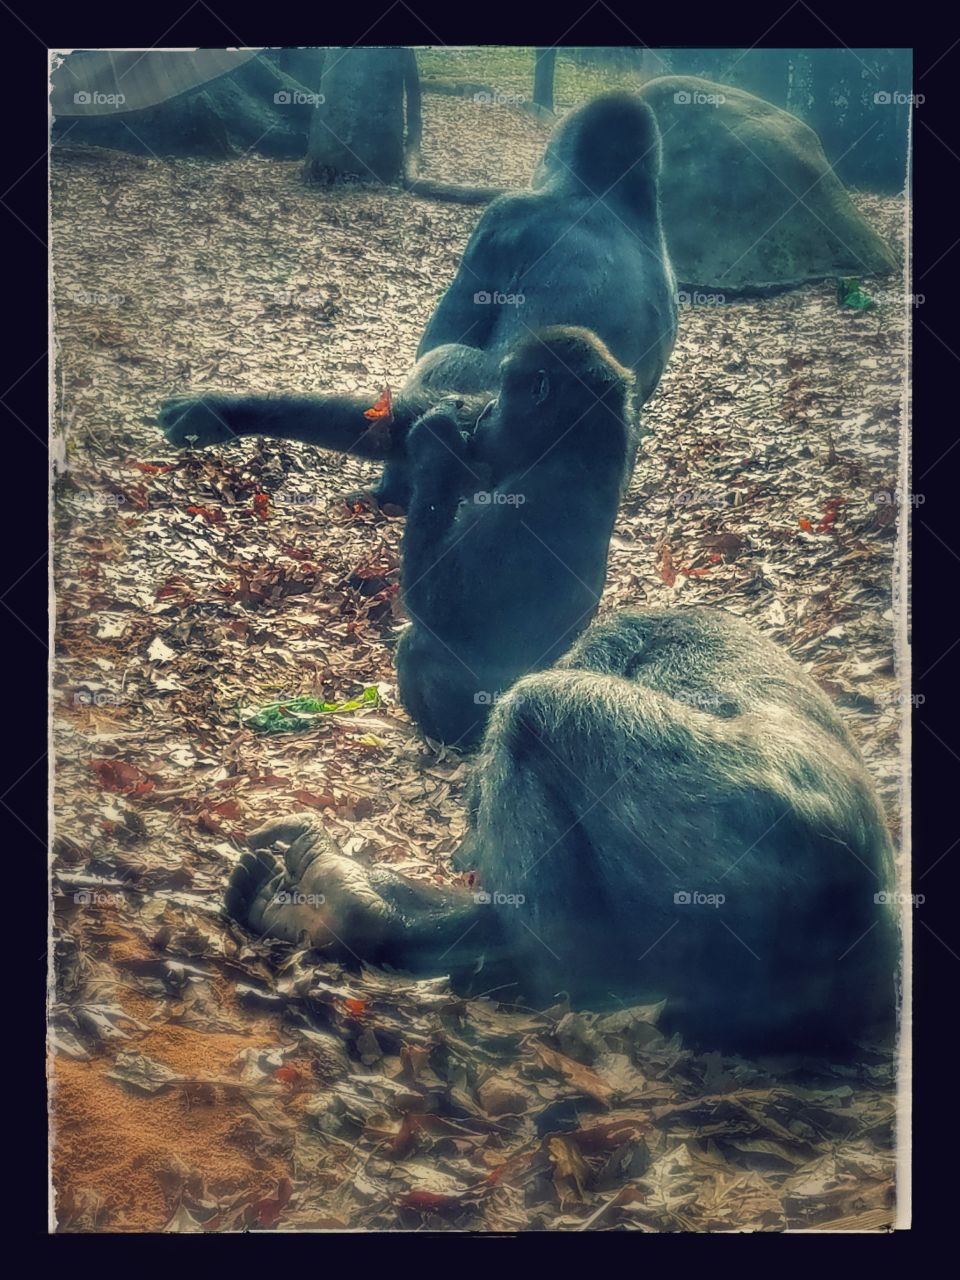 some lazy gorilla's at the Atlanta Zoo